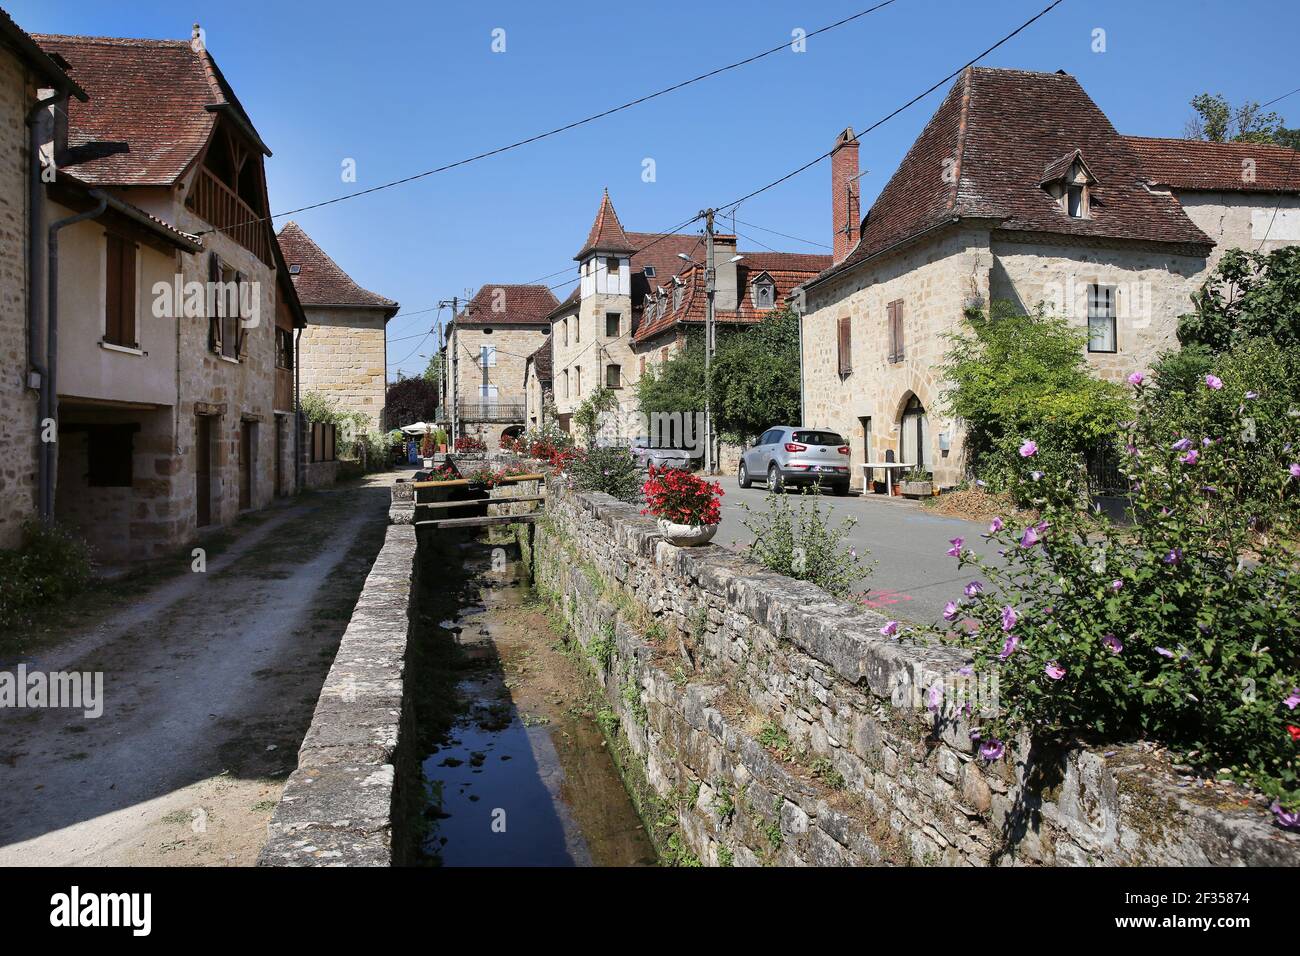 Fons, dans la région naturelle de la Limougue (sud de la France) ruisseau traversant le village Banque D'Images